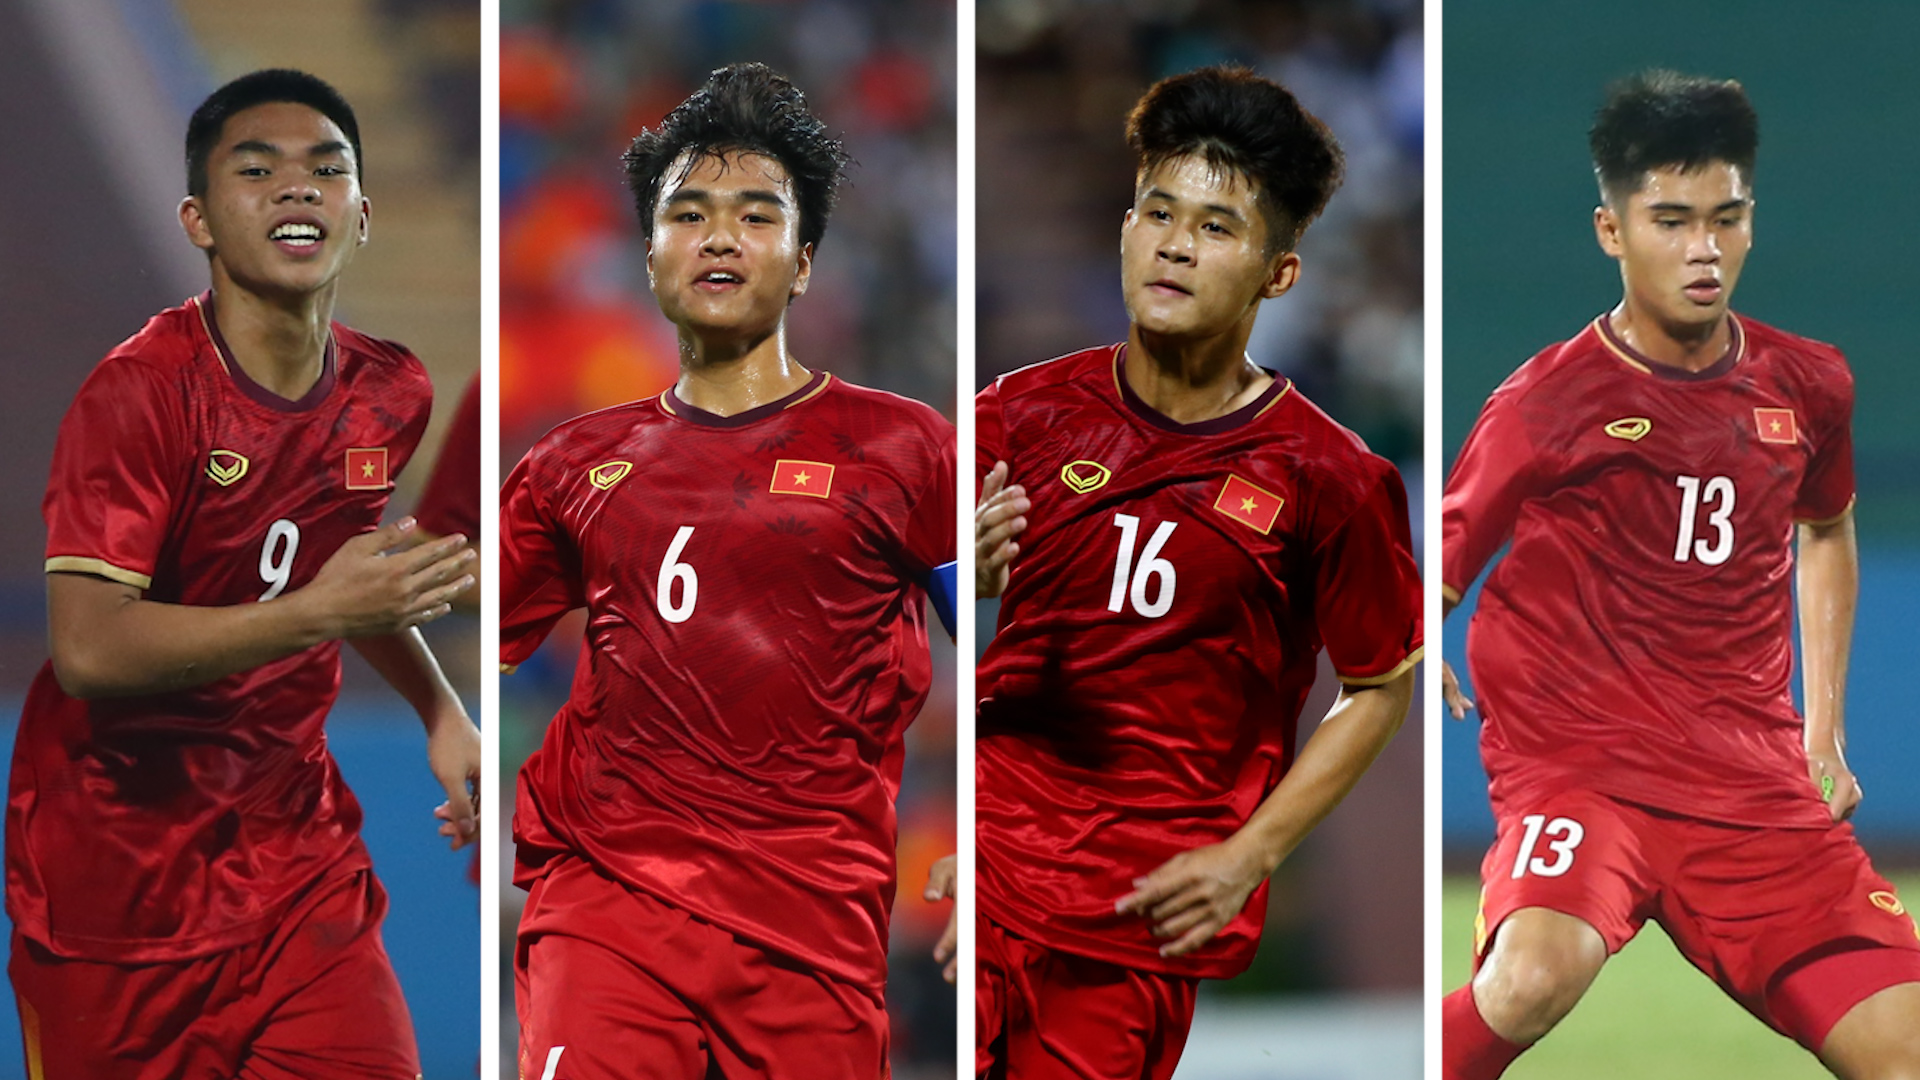 U.17 Việt Nam: Nếu bạn là một fan của bóng đá trẻ, hãy khám phá bức ảnh đẹp về tuyển U.17 Việt Nam. Những tay cầu thủ trẻ đầy tài năng này luôn tìm kiếm cơ hội để sáng tạo và tiến xa trên con đường chinh phục thành công, và bạn sẽ được thấy tất cả điều đó.